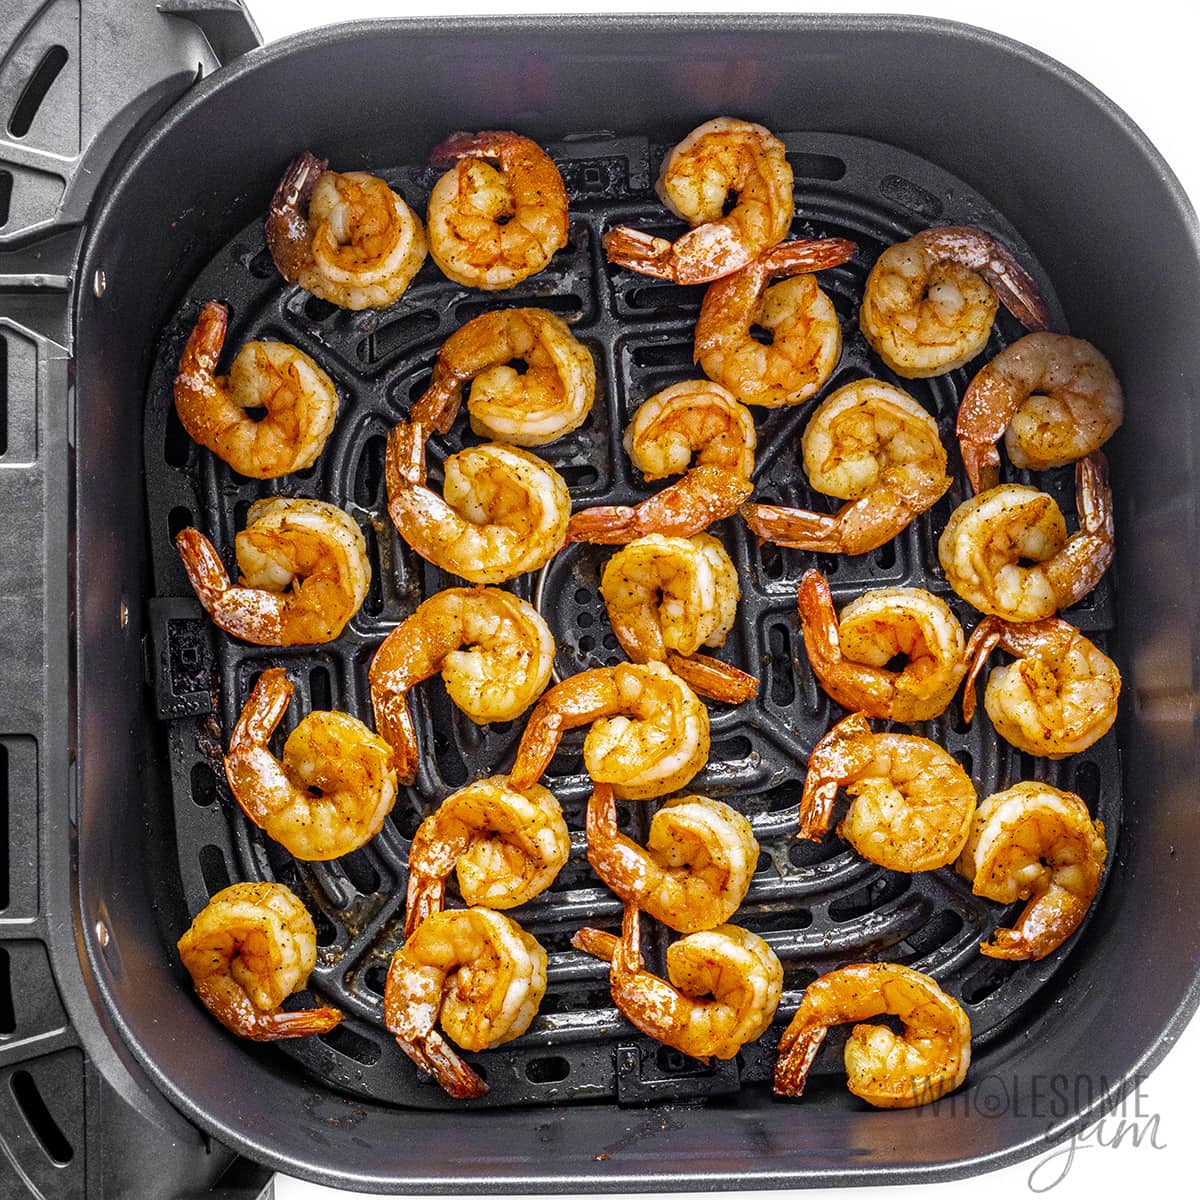 Cooked shrimp in air fryer basket.